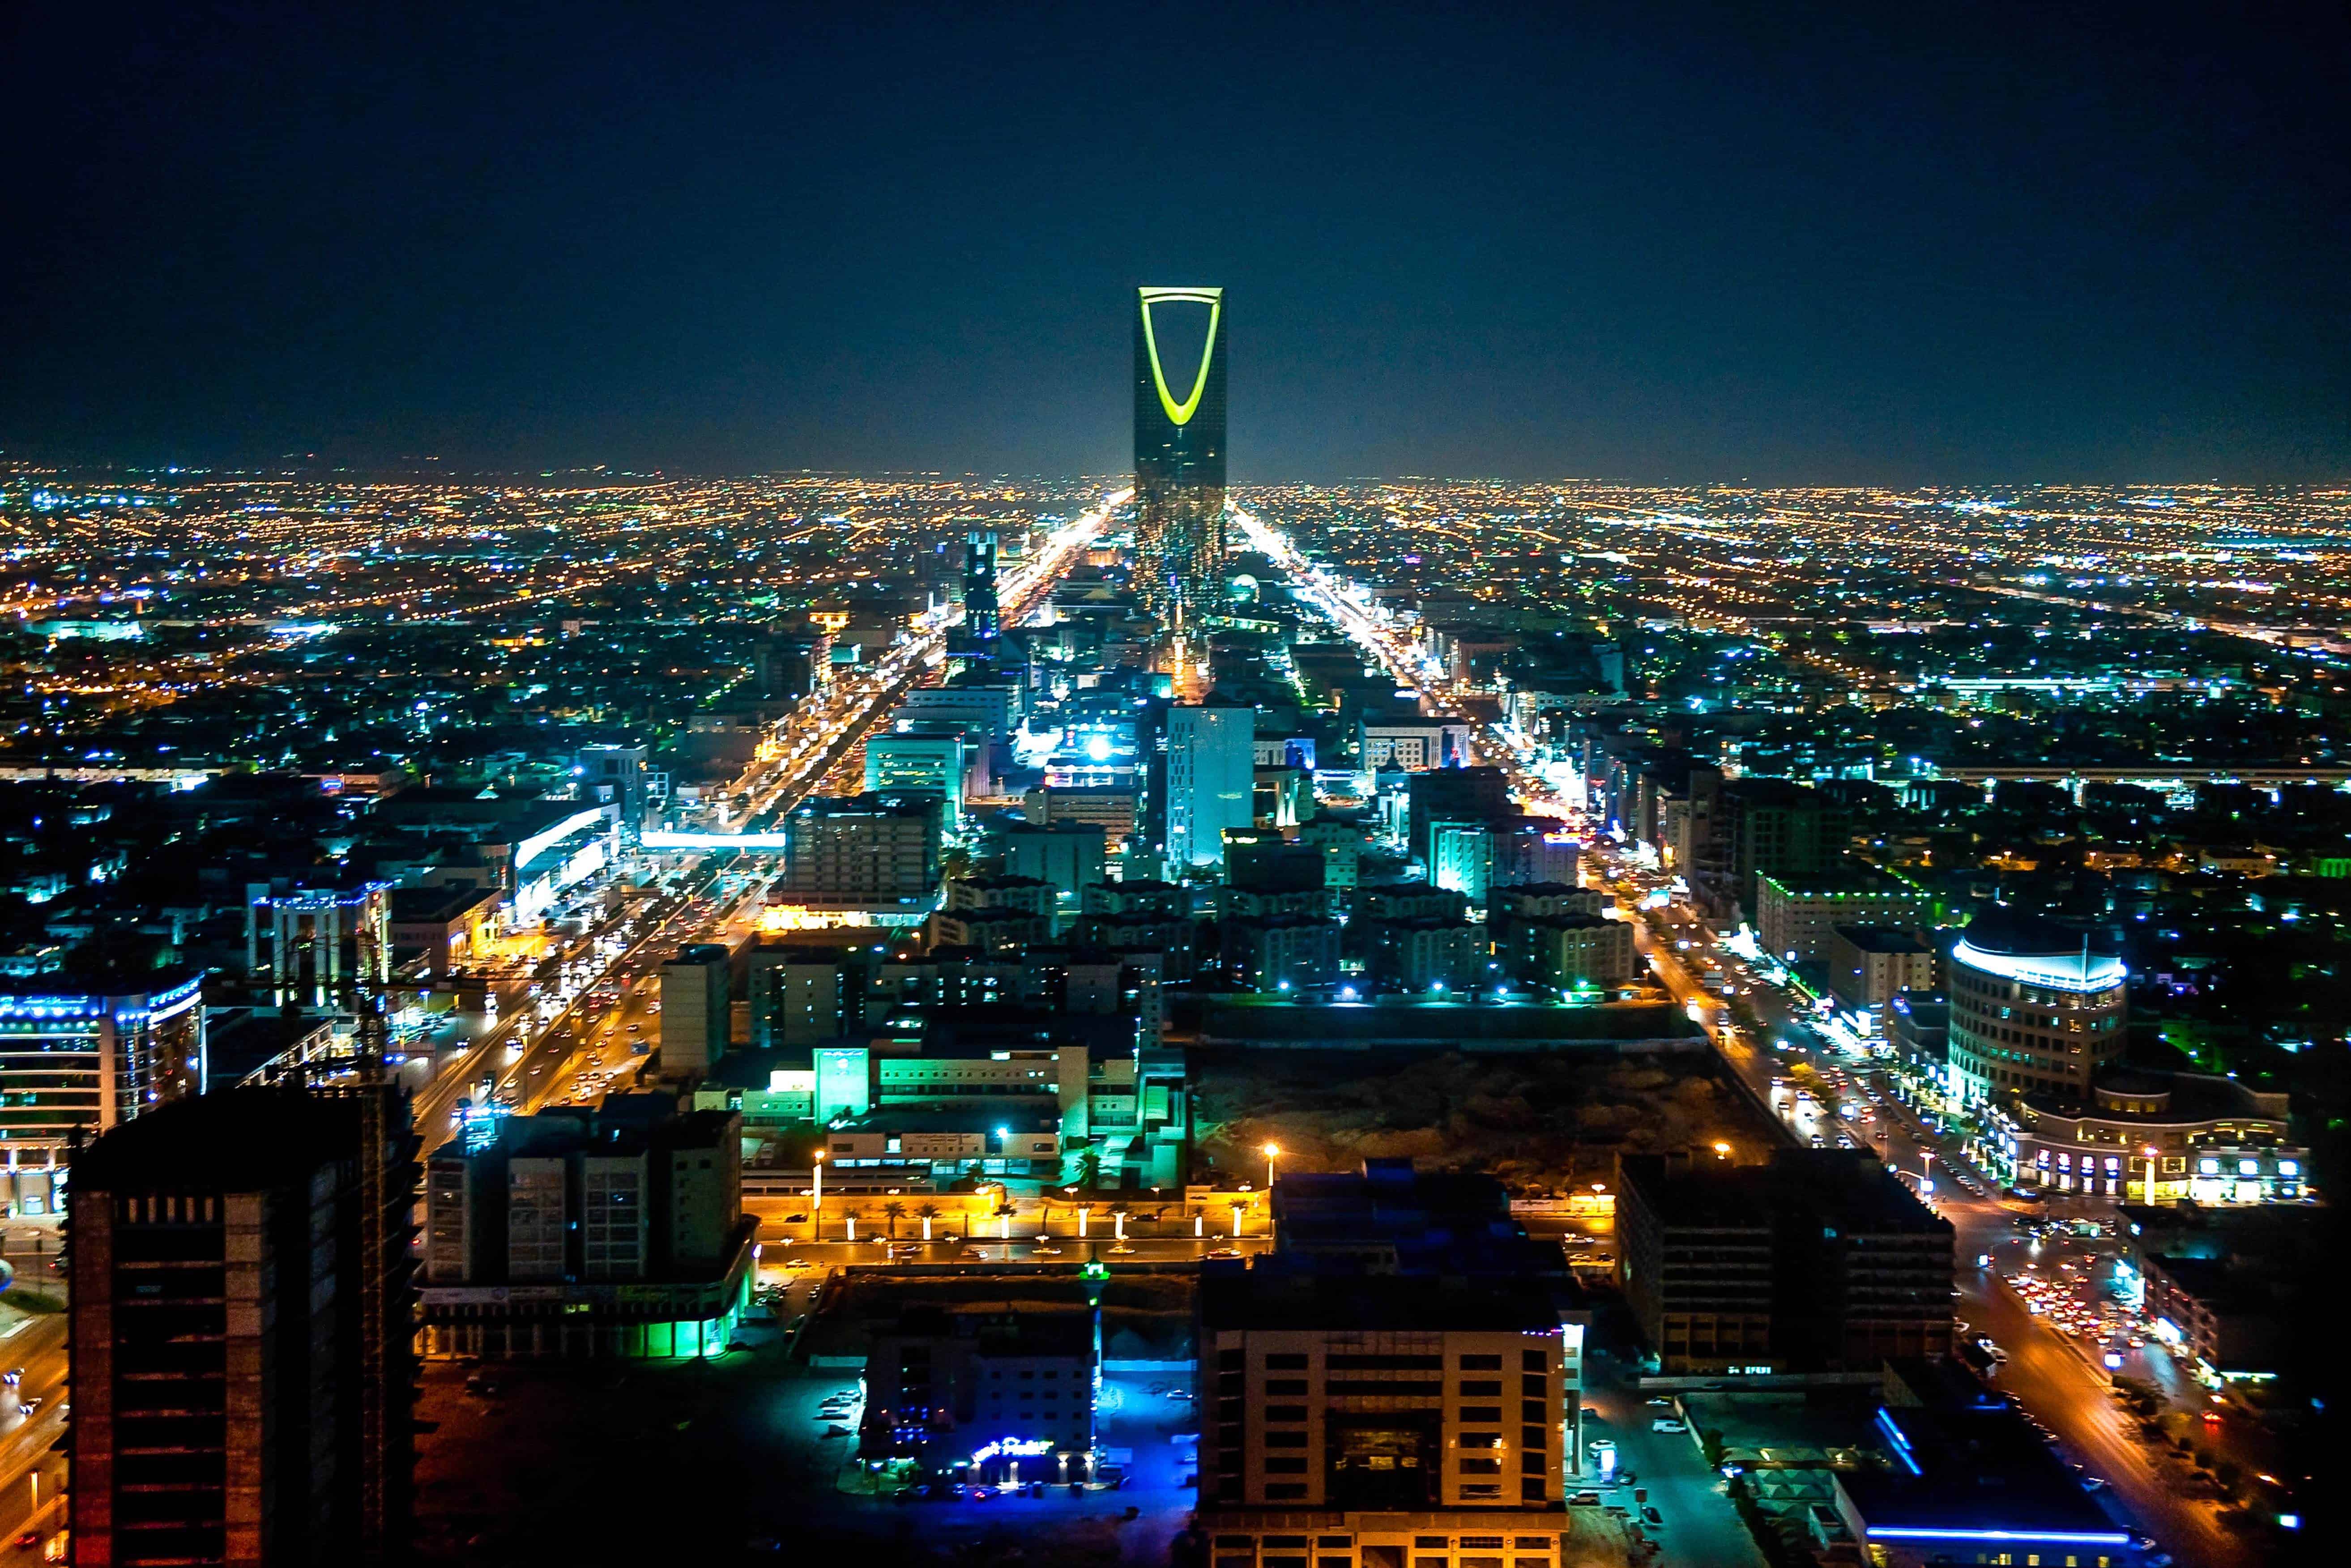 Nearer al. Город Эр-Рияд Саудовская Аравия. Саудовская Аравия столица Эр-Рияд. Город Рияд в Саудовской Аравии. Саудовская Аравия столица Эр-Рияд фото.